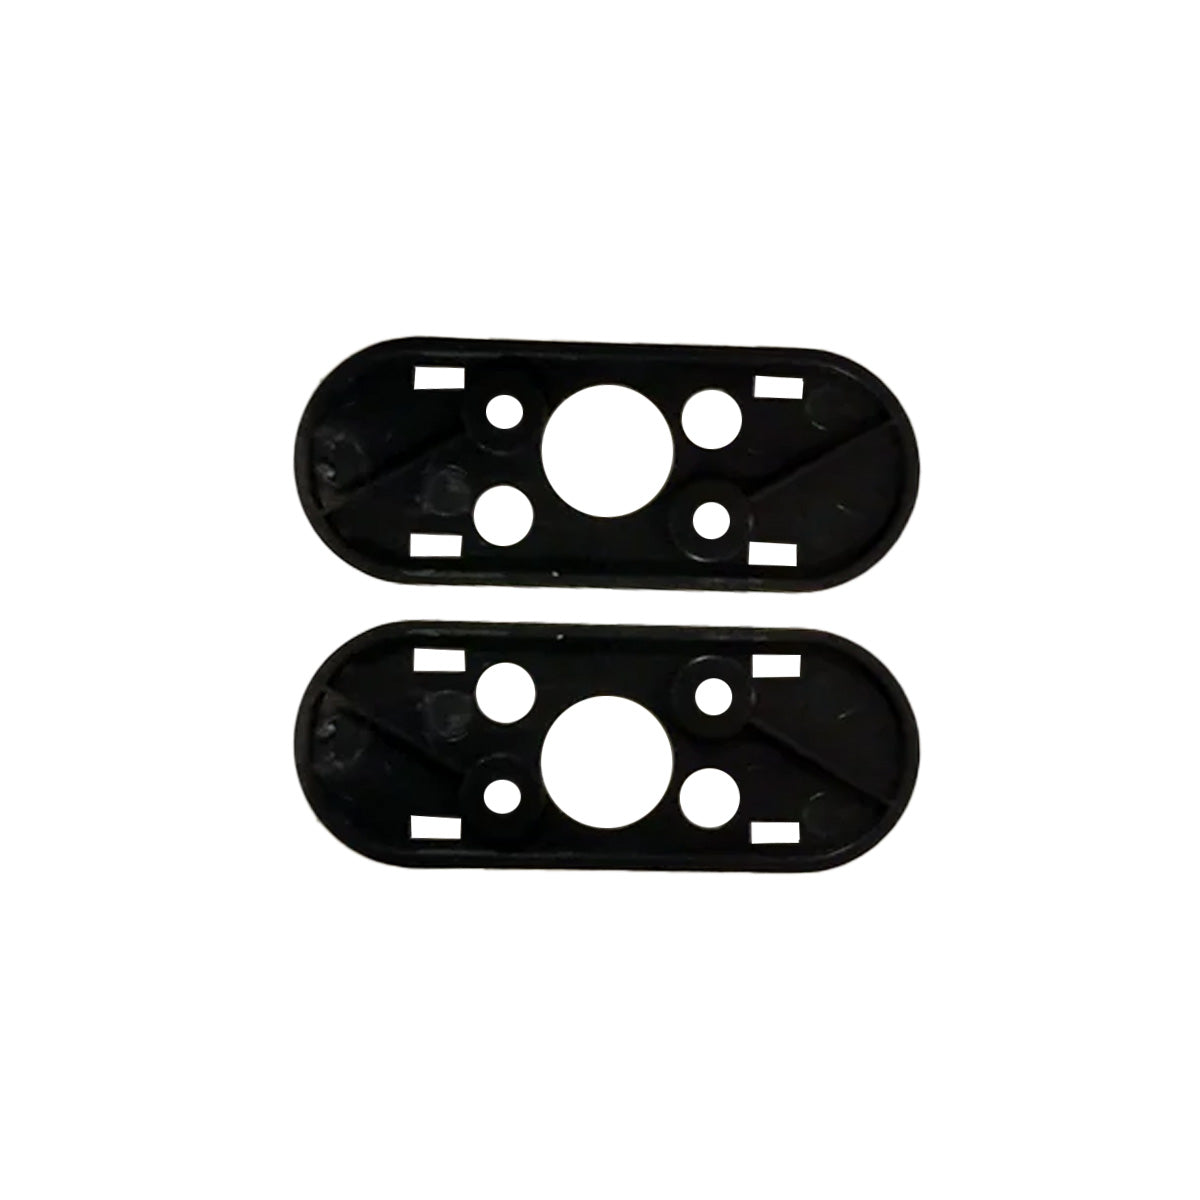 Kit d'embases Snap Fit pour réflecteurs arrière - S'adapte uniquement aux trottinettes Pure Air³